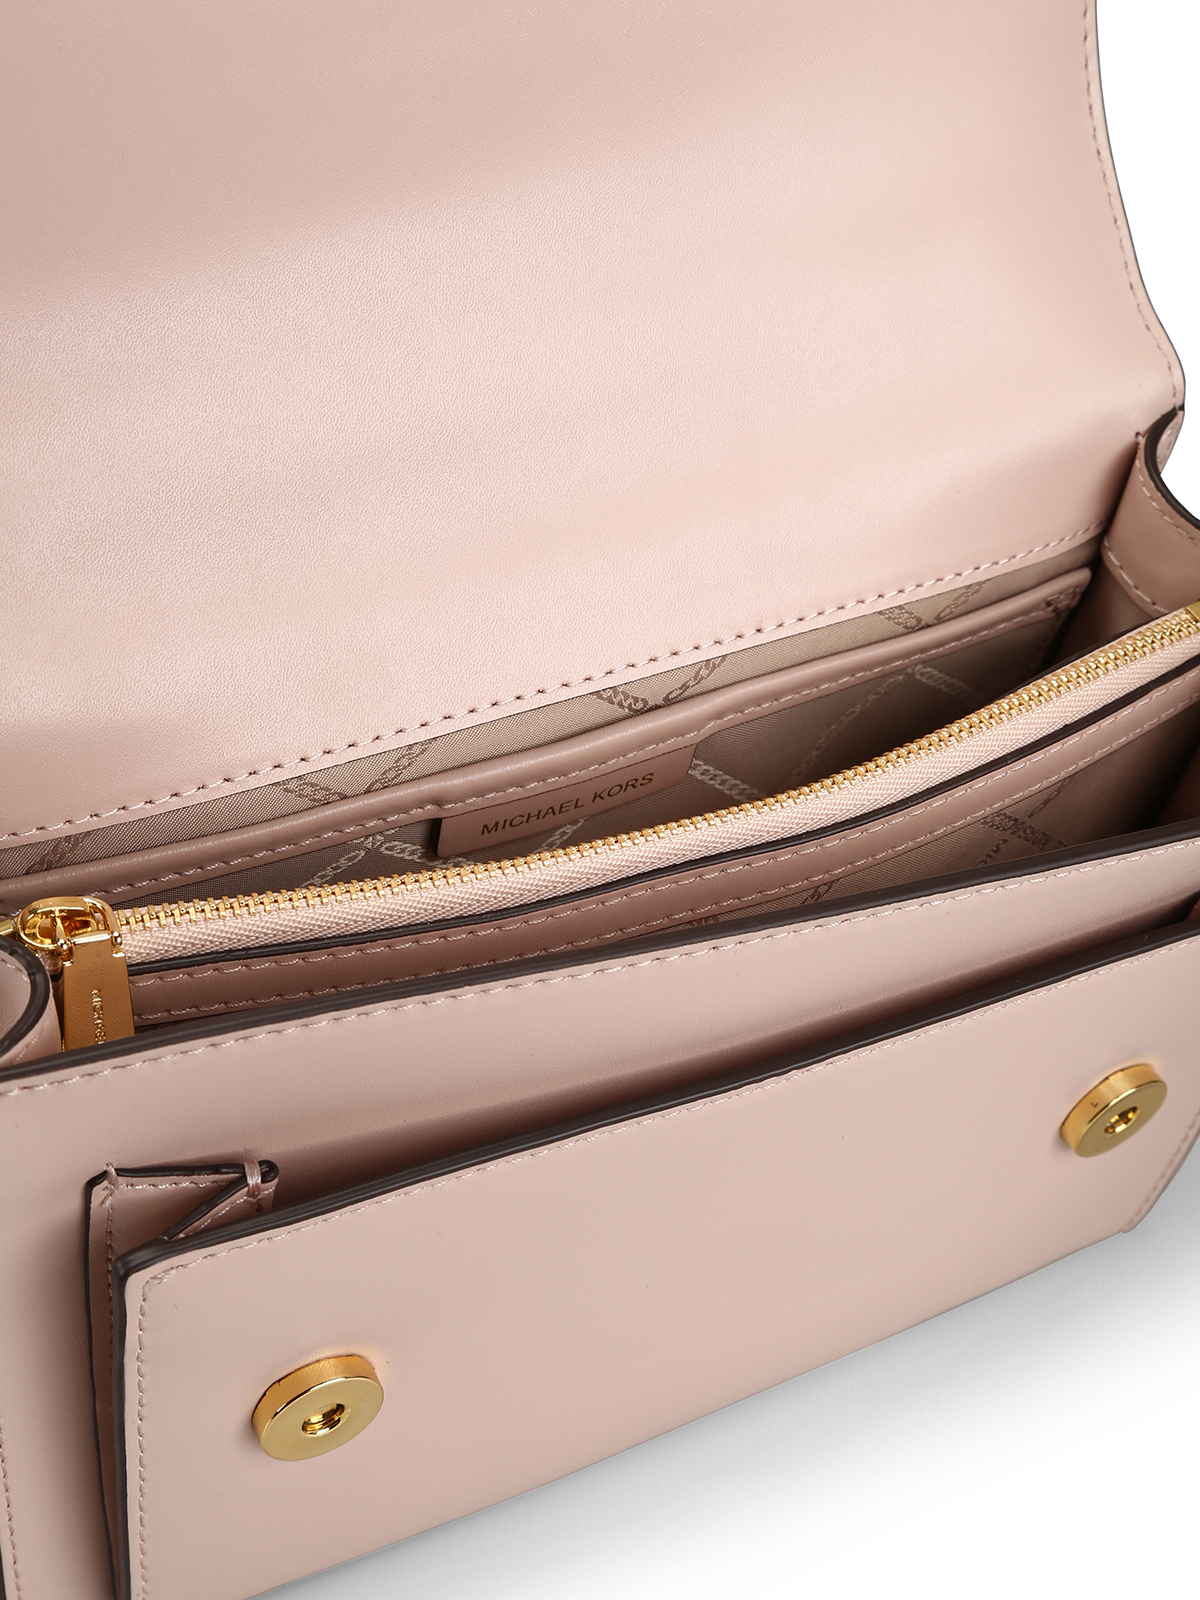 Michael Kors Soft Pink Tote Bag With Shoulder Strap | eBay